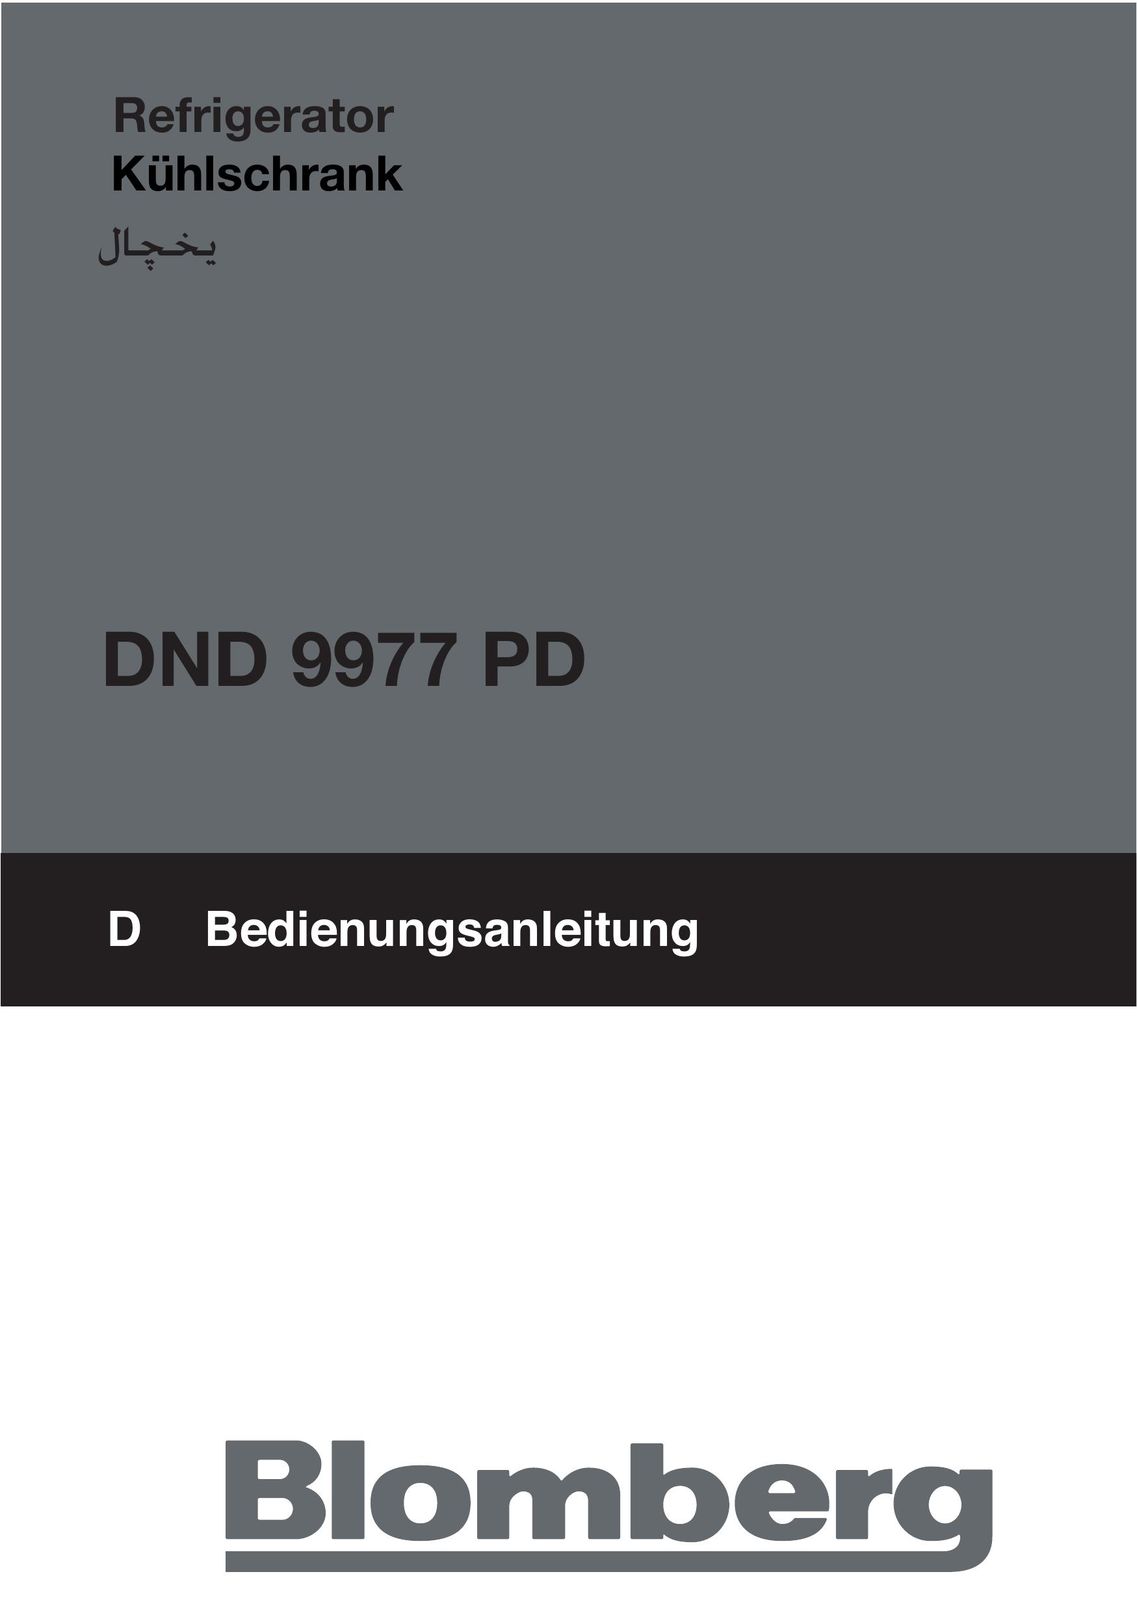 Blomberg DND 9977 PD Freezer User Manual